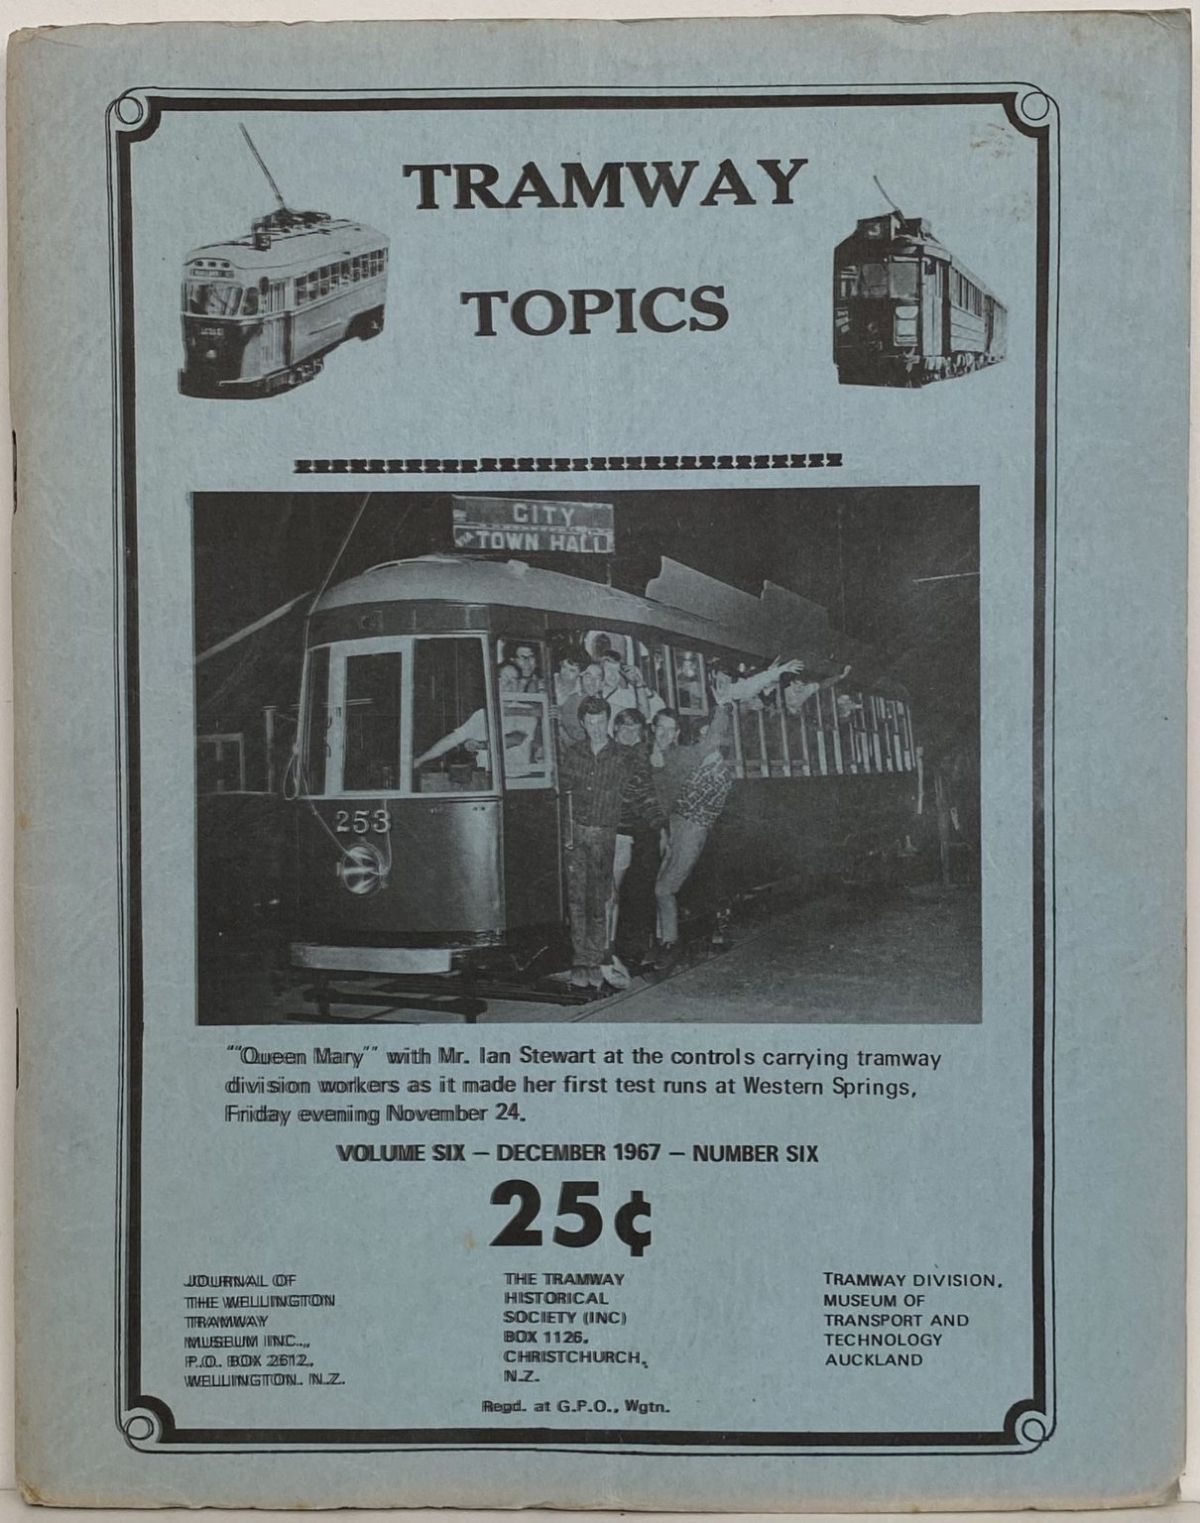 TRAMWAY TOPICS Vol 6, No 6, December 1967